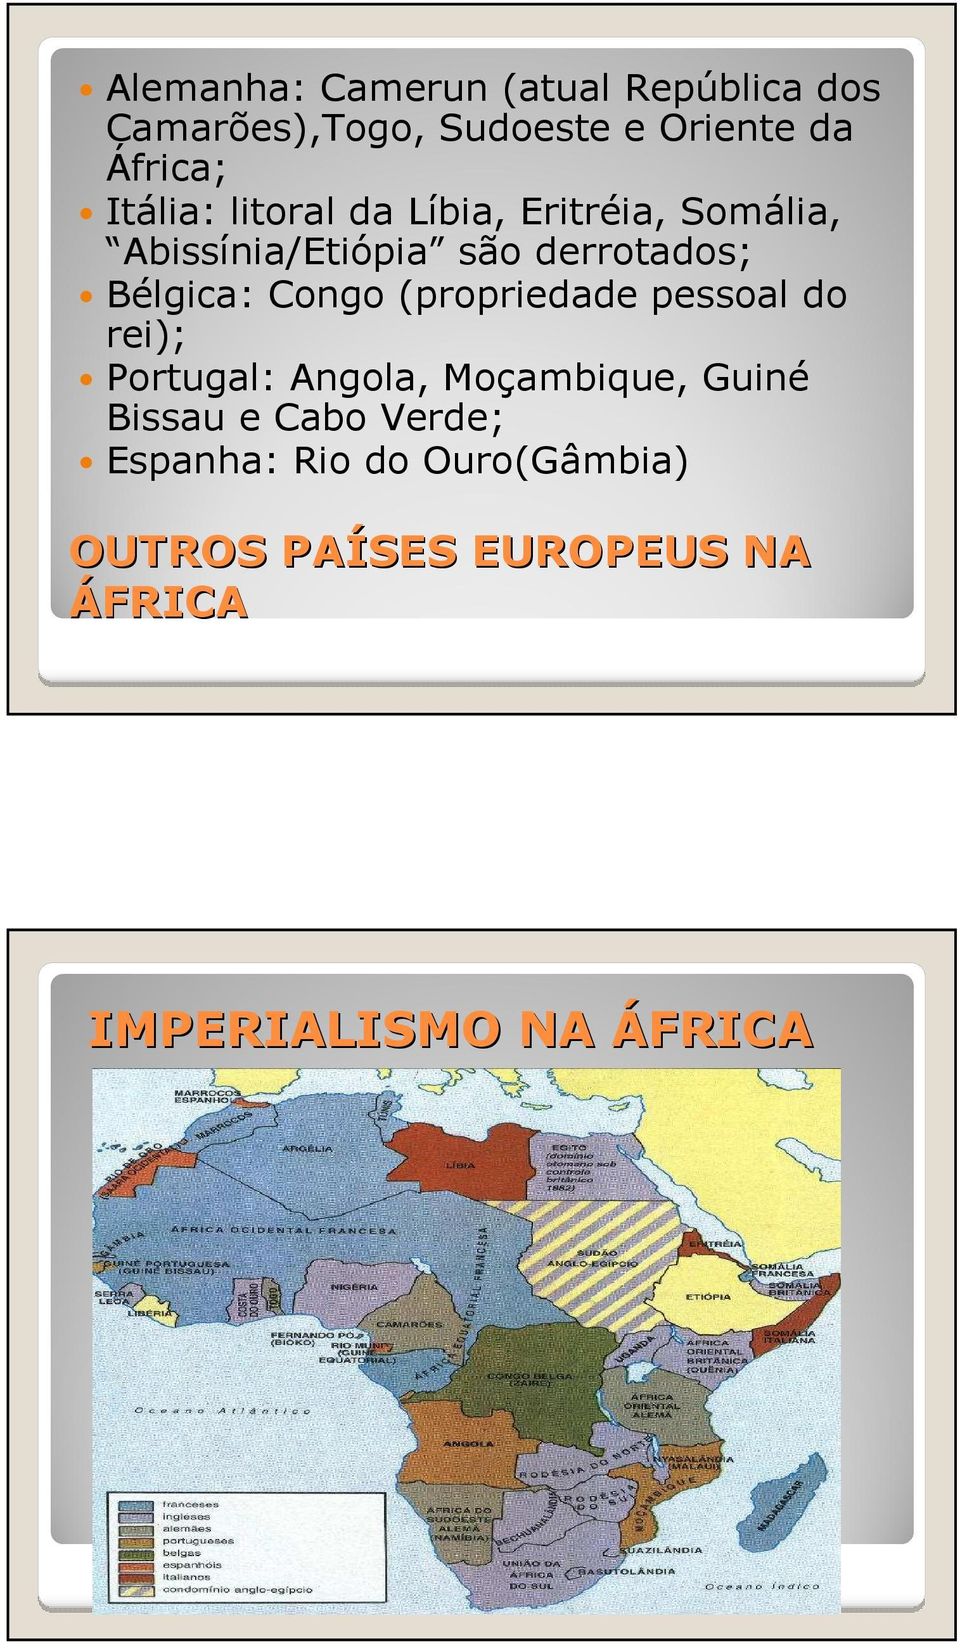 Congo (propriedade pessoal do rei); Portugal: Angola, Moçambique, Guiné Bissau e Cabo